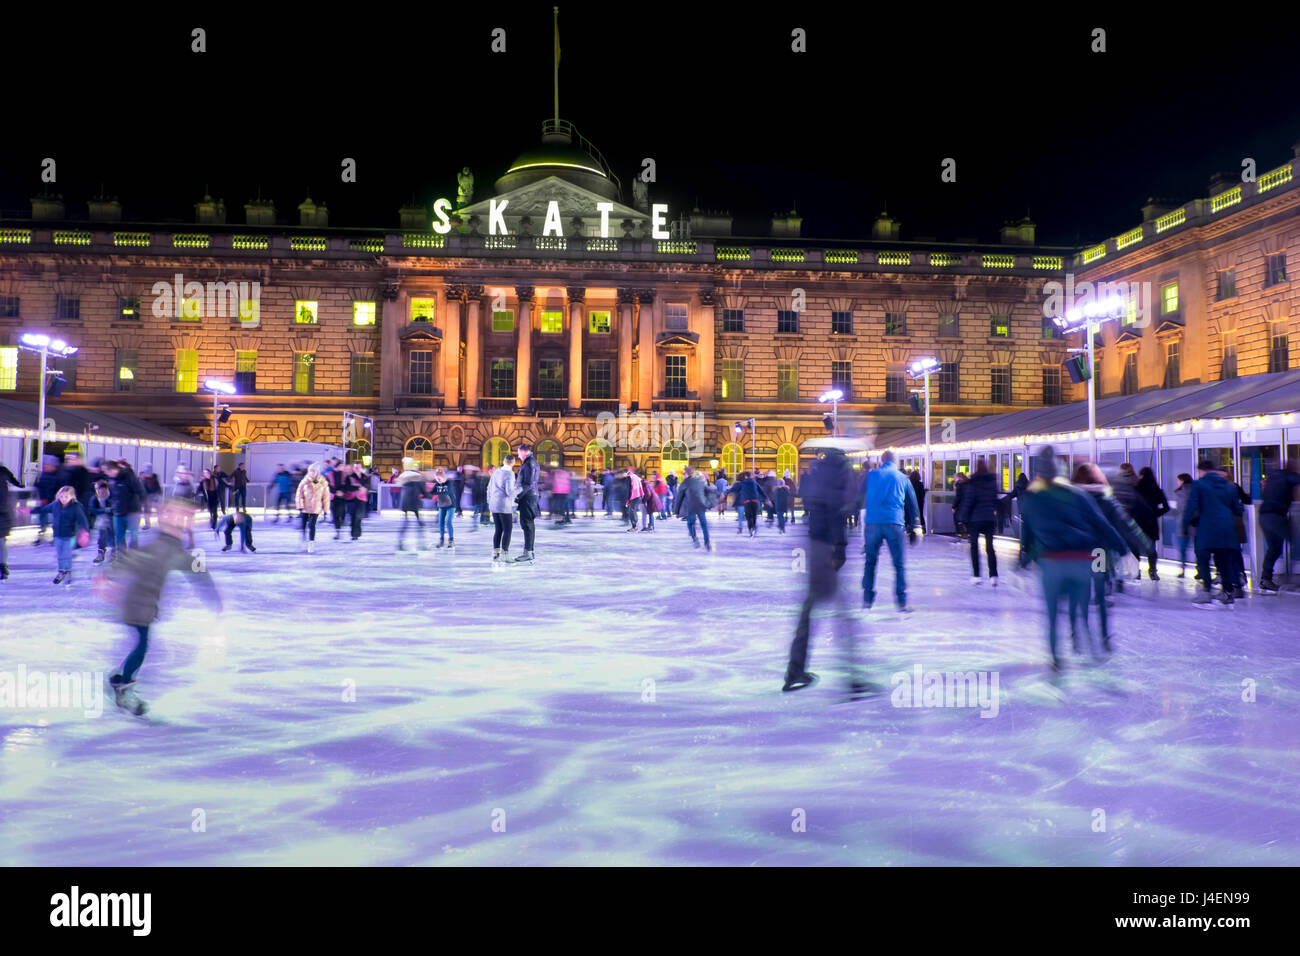 Eislaufen Sie, Somerset House, London, England, Vereinigtes Königreich, Europa Stockfoto